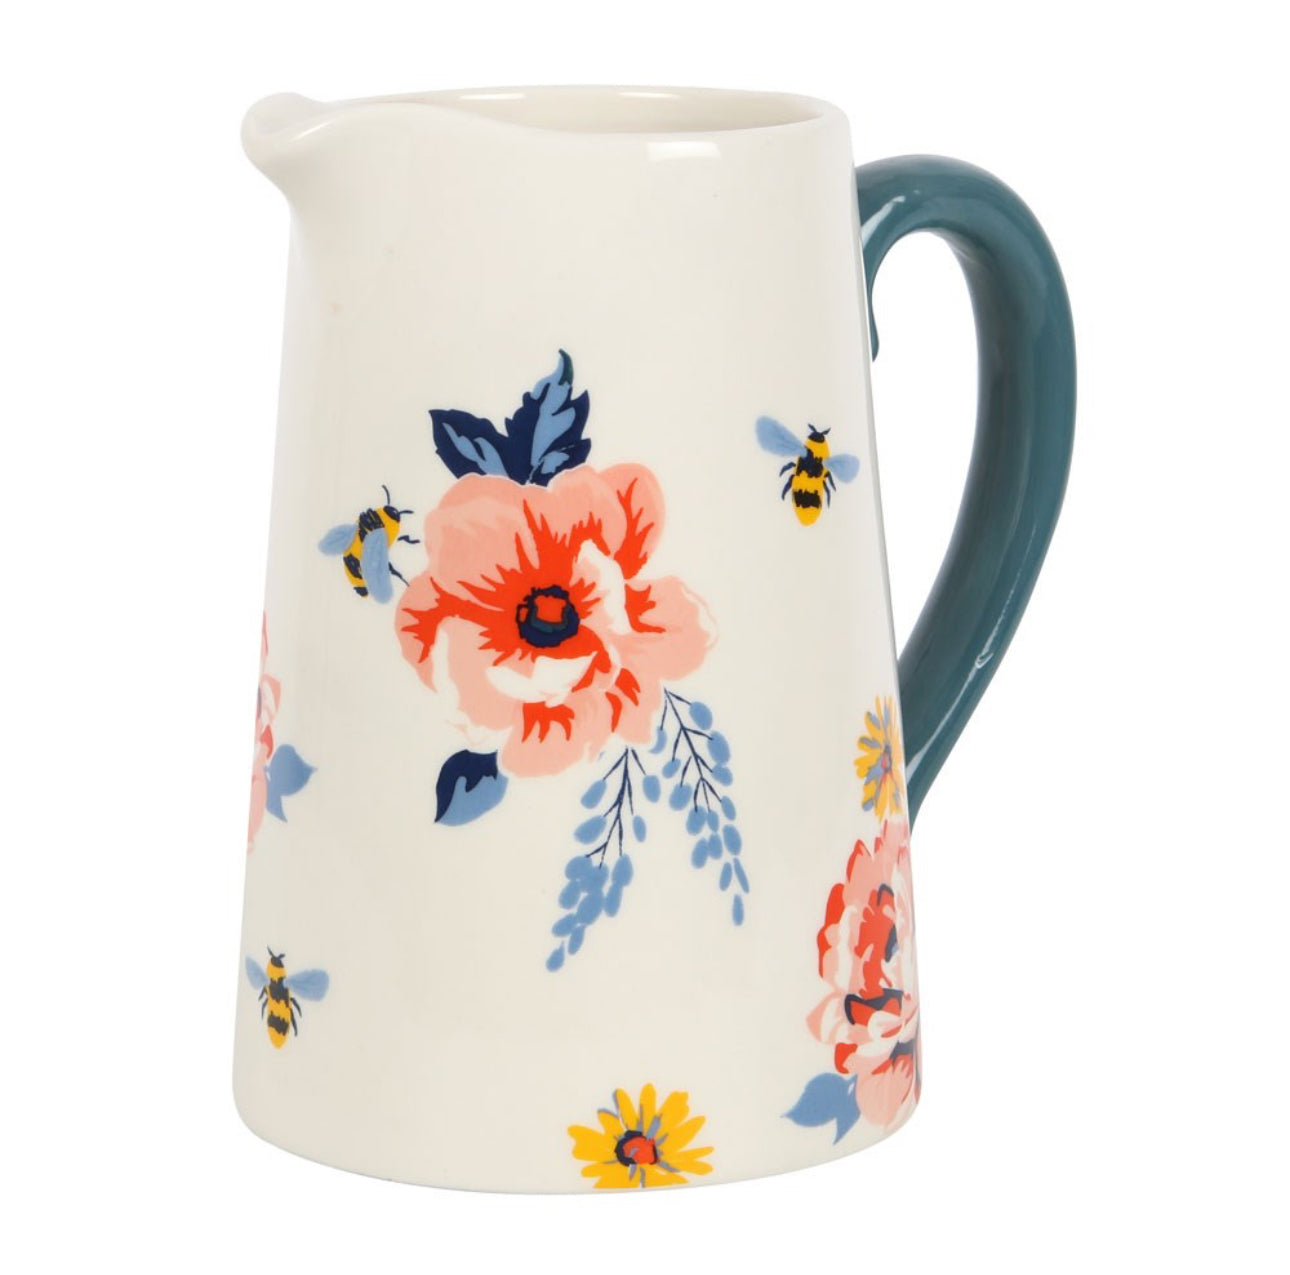 Bee-utiful Floral Ceramic Mug